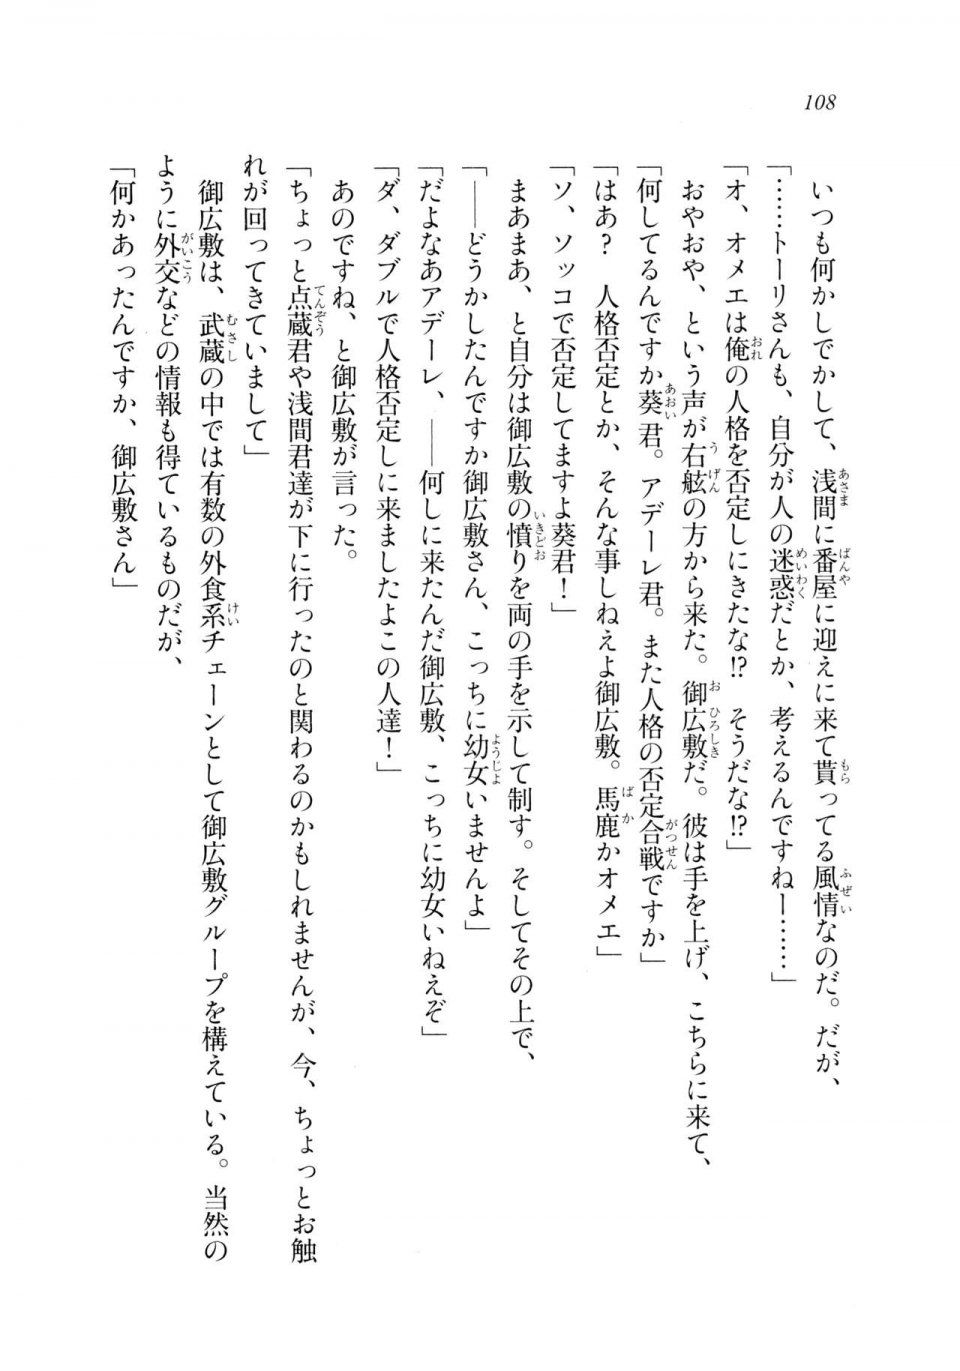 Kyoukai Senjou no Horizon LN Sidestory Vol 2 - Photo #106